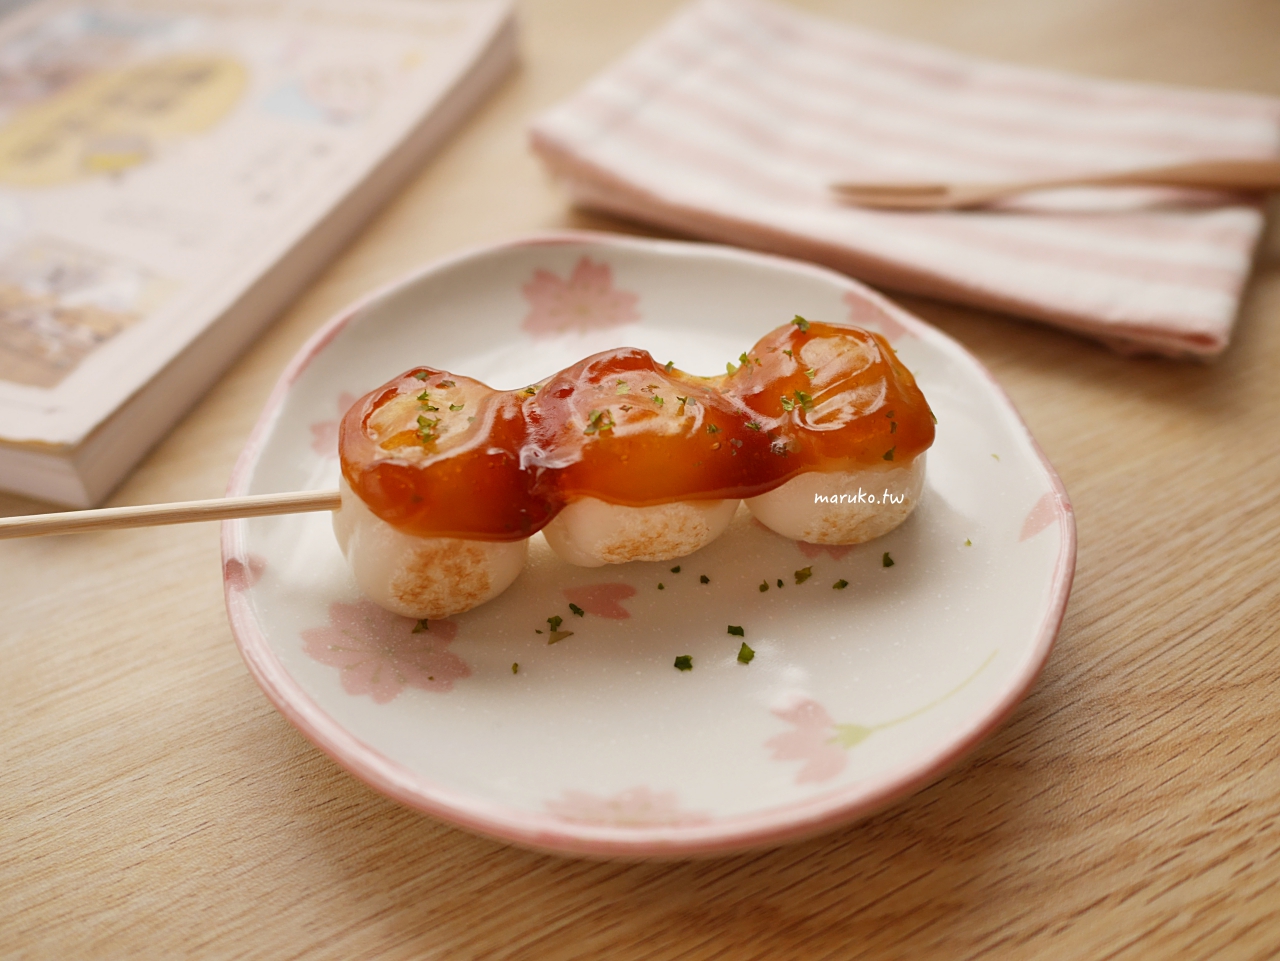 【食譜】甜醬油糰子 糯米粉不需要燙麵的做法 日式甜醬油一次學會